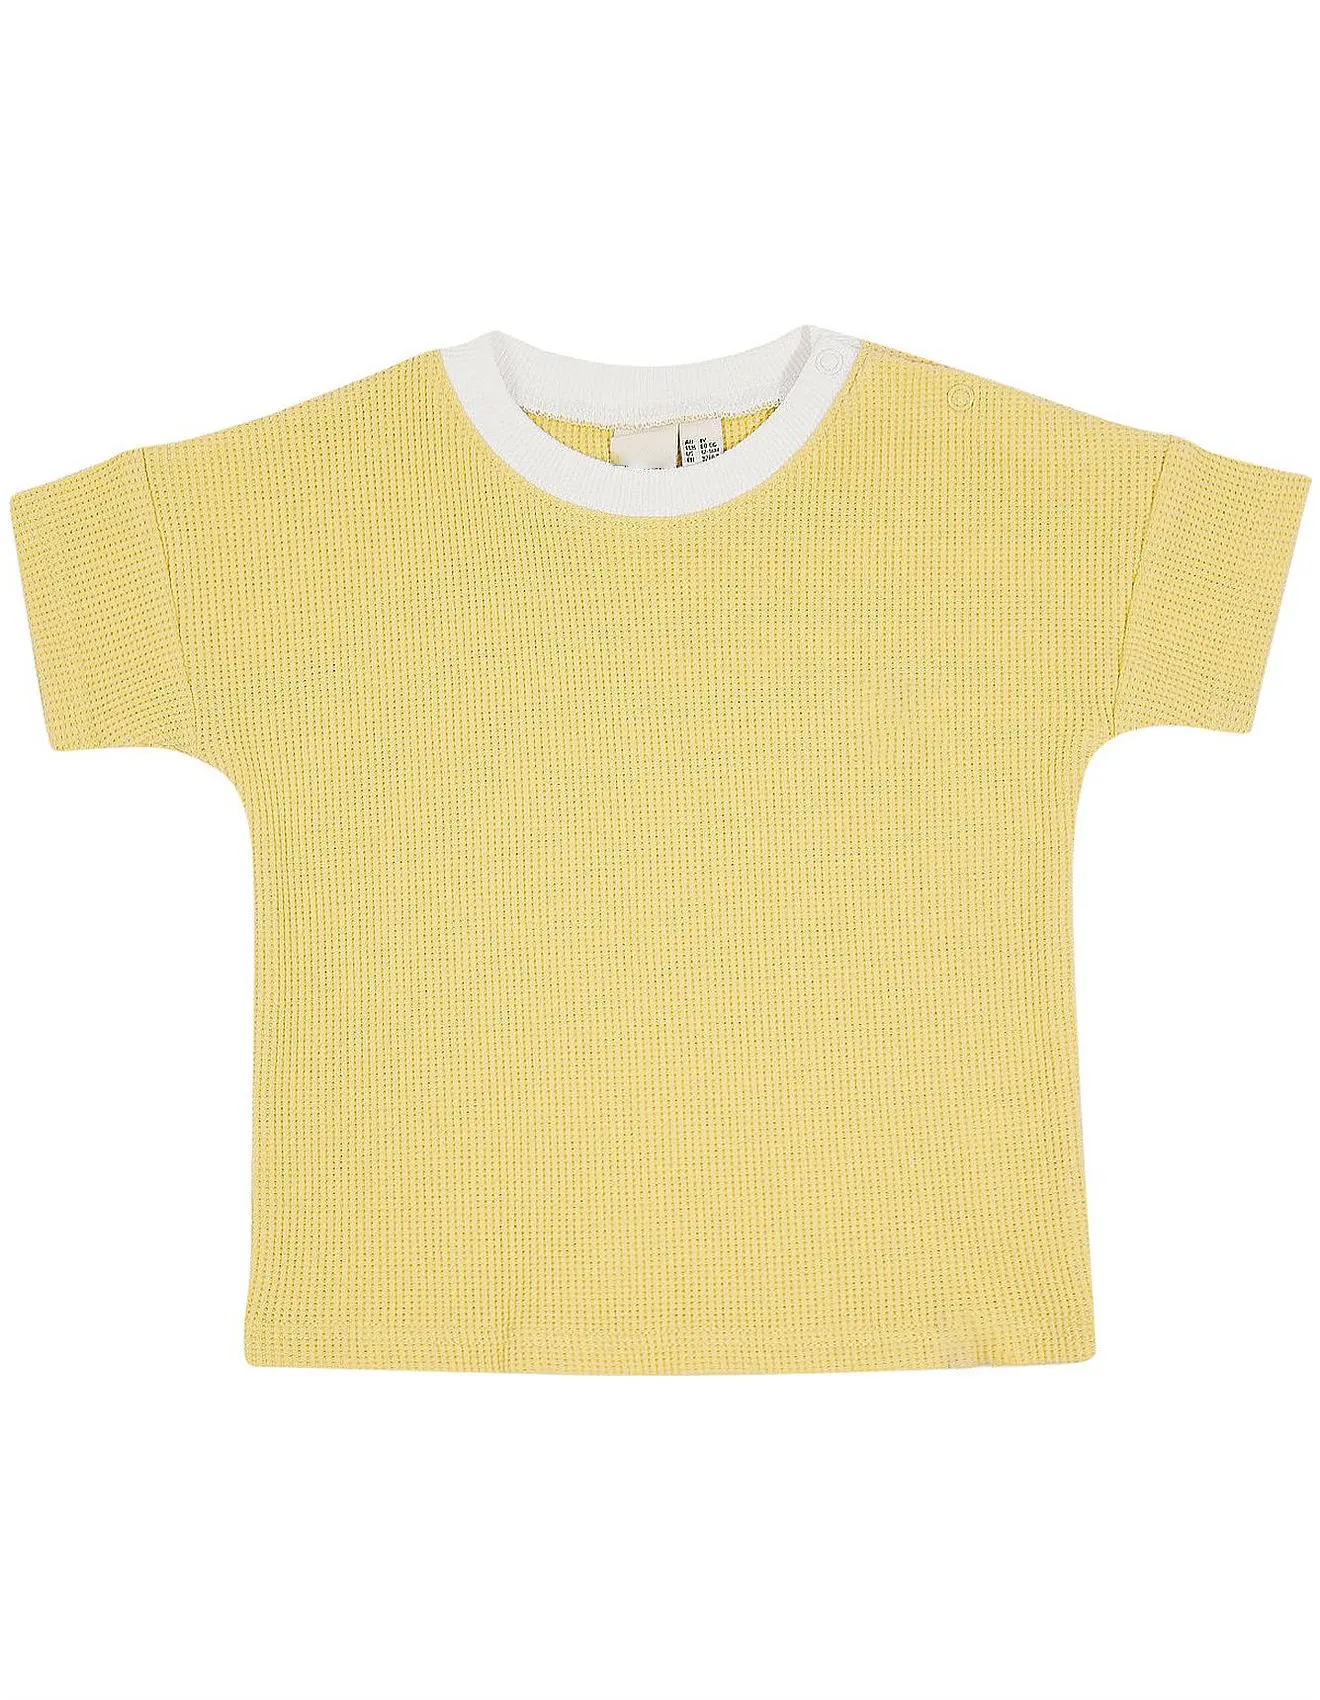 Kaus Katun Wafel Wanita, Kaus Katun Wafel Kasual Fit Ungu Kuning Musim Panas Kustom untuk Anak Perempuan